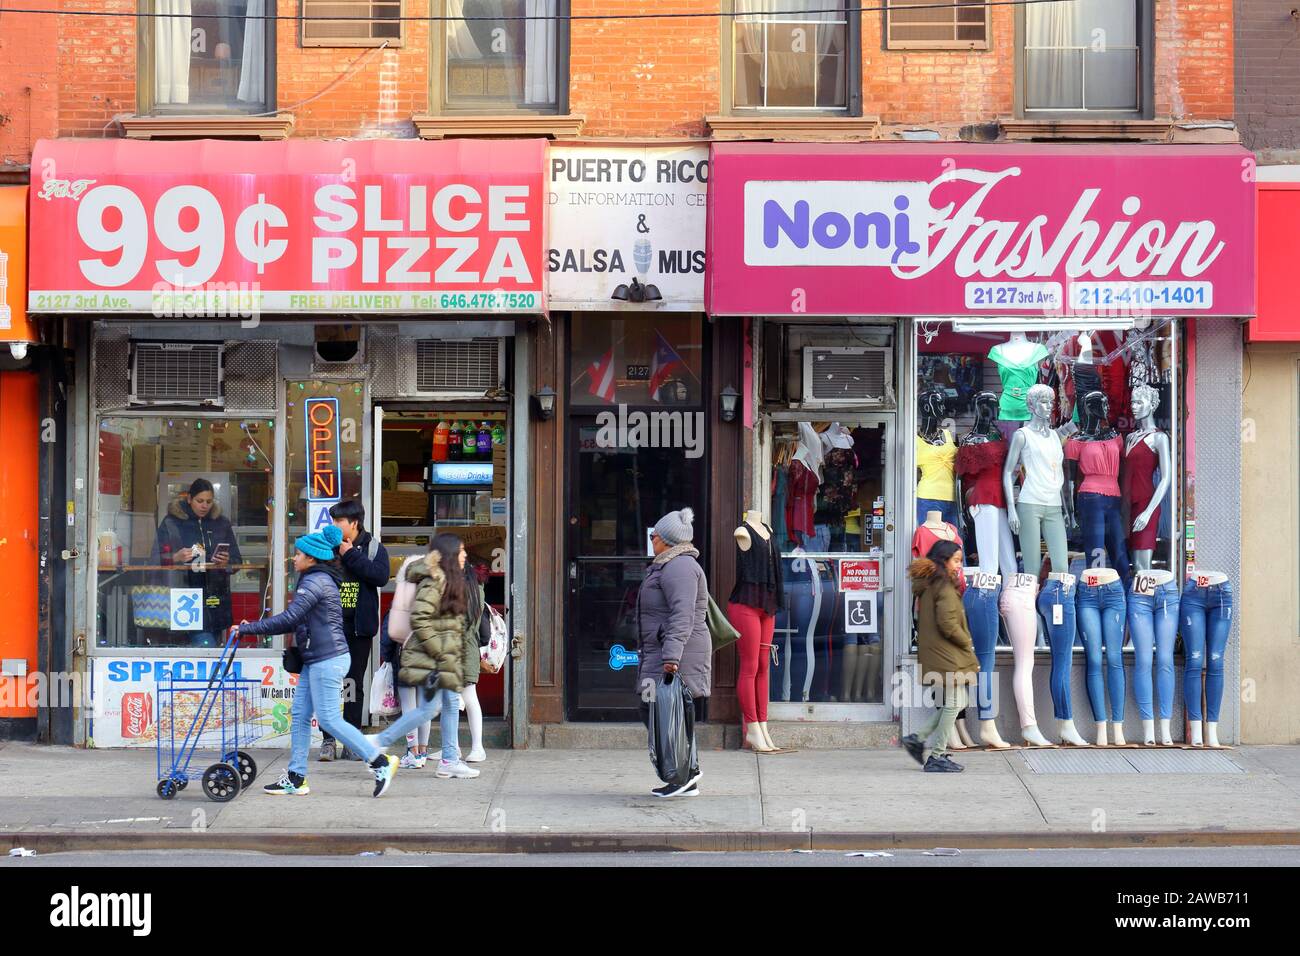 99 Pizza, Noni Fashion, 2127 3rd Ave, Nueva York, NY. Escaparate exterior de una pizzería, y una tienda de ropa en el barrio East Harlem de Manhattan. Foto de stock